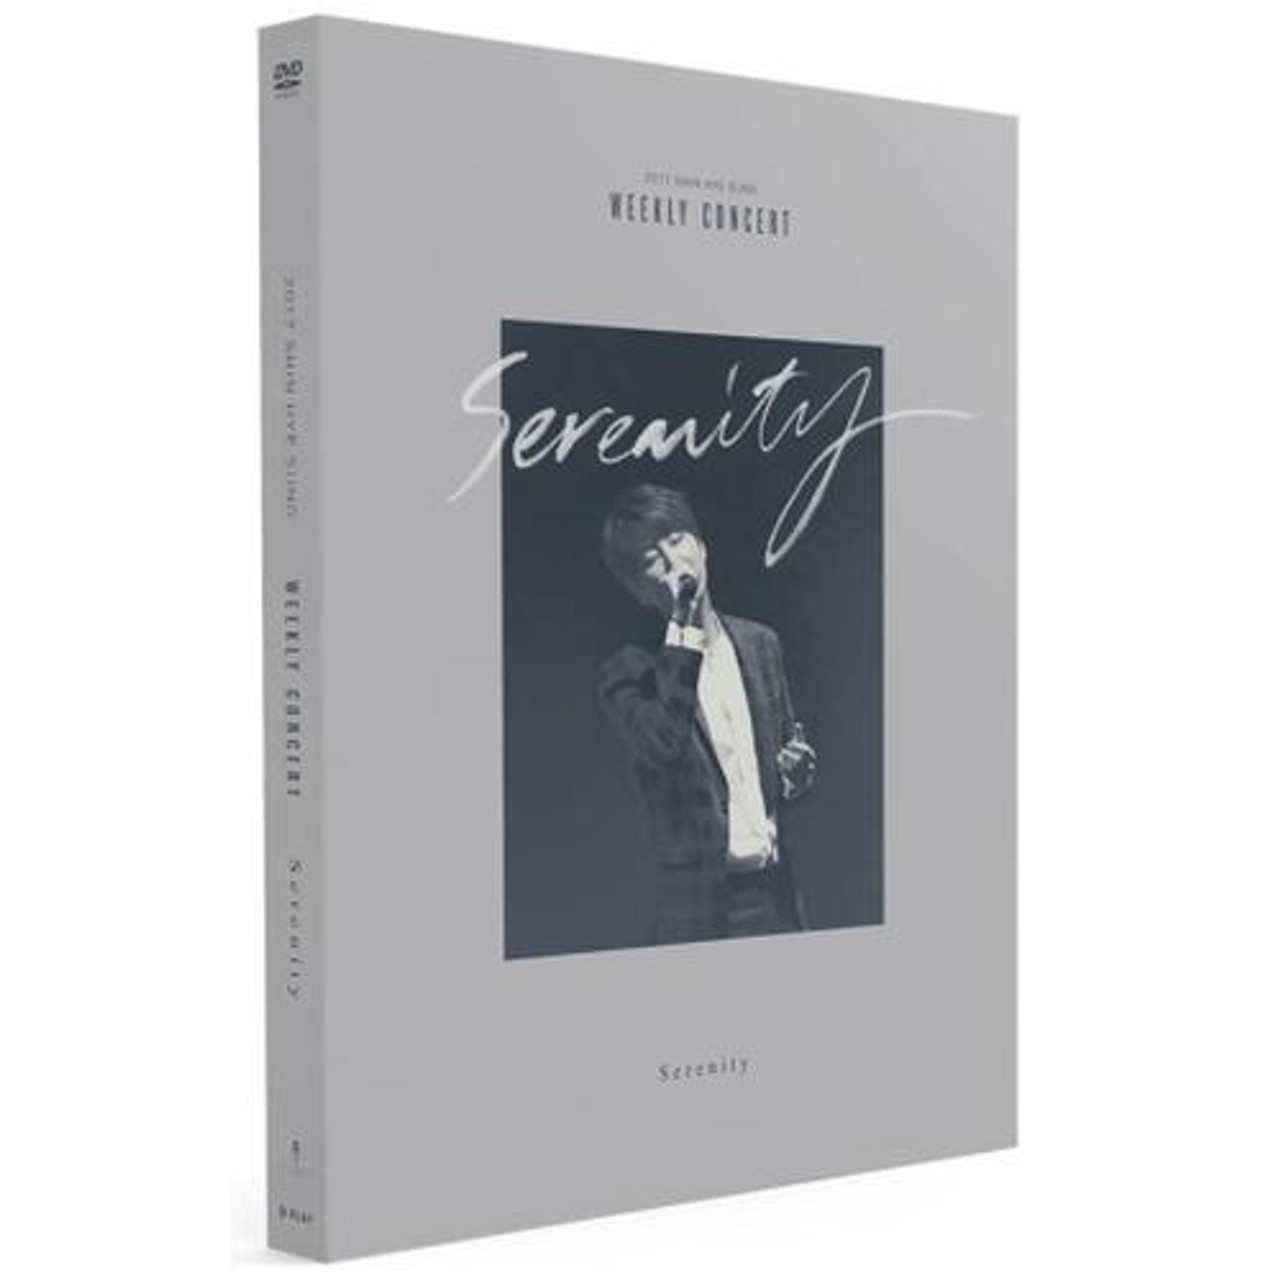 2017 Shin Hye Sung Weekly Concert: Serenity [DVD]　(shin